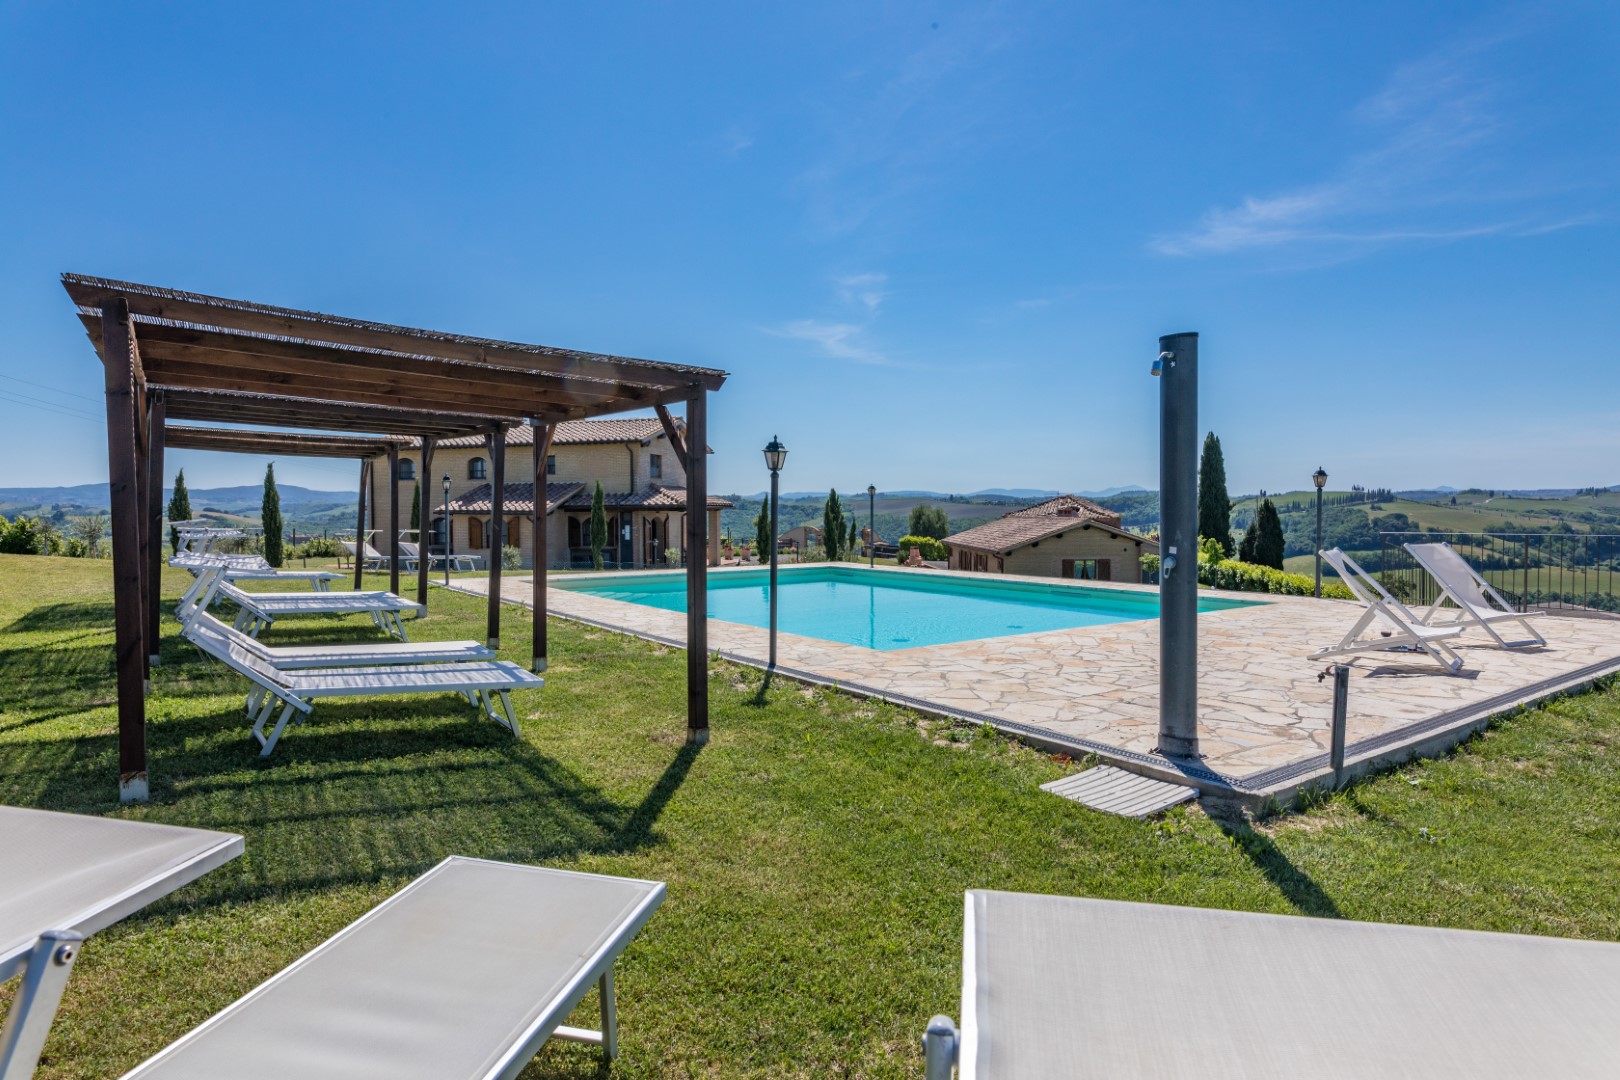 330_46498f8_Agriturismo, vakantiehuis met zwembad, kleinschalig, Toscane, Buonconvento, Siena, Podere Torricella, Italie (4)